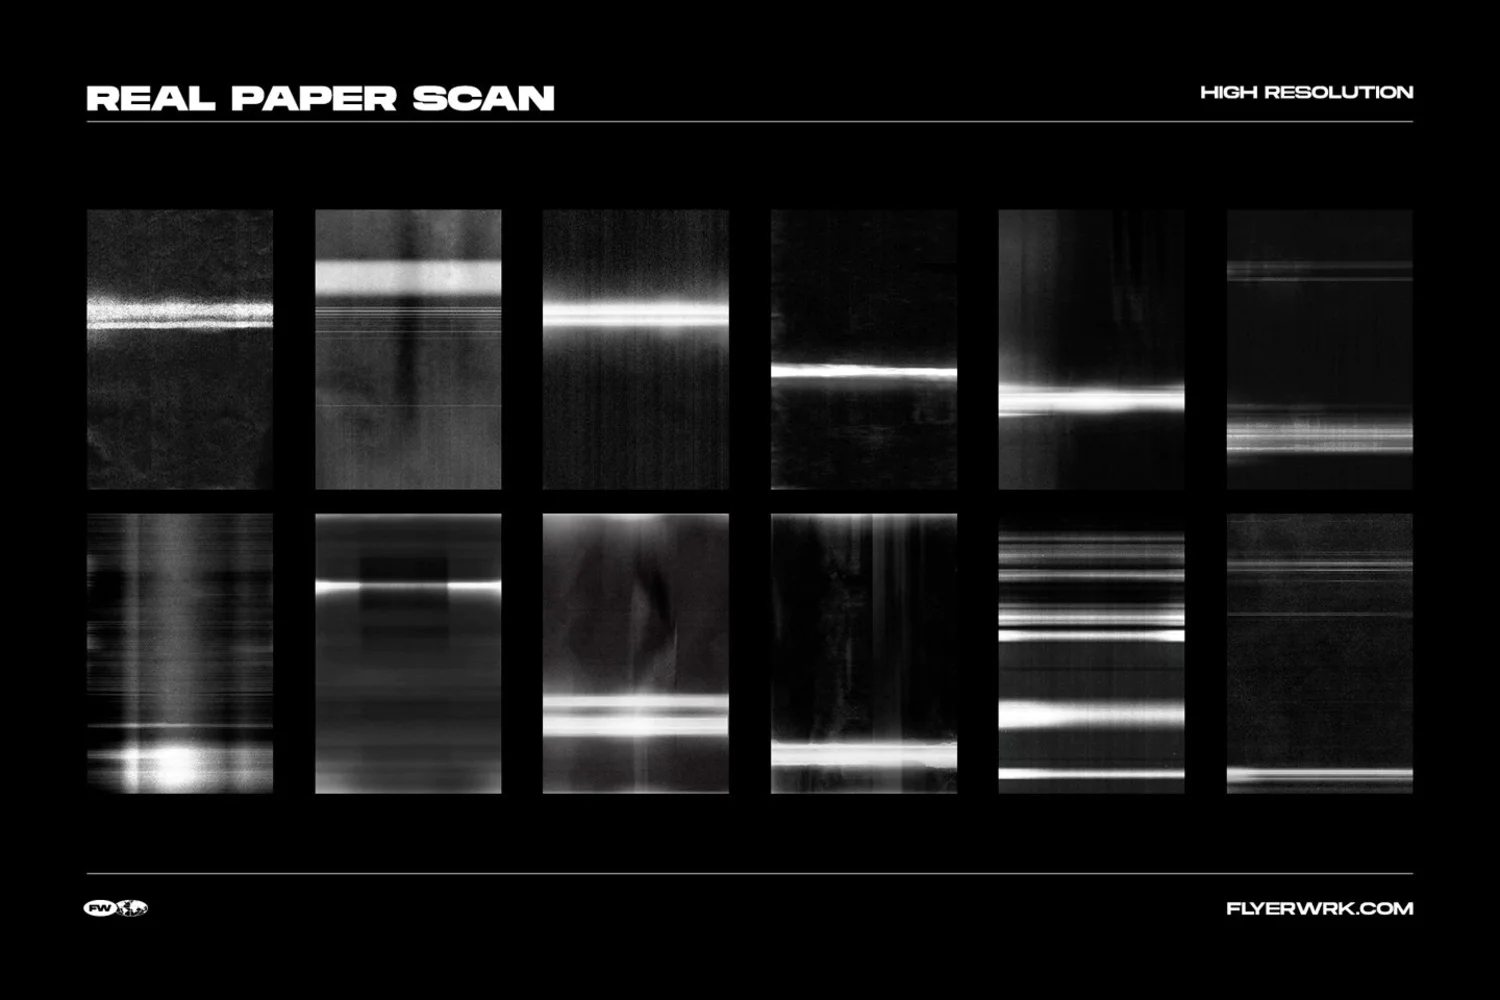 2329 潮流复古粗糙故障扫描纸张效果抽象酸性影印纹理背景样机设计素材 FW Mad Copy Scan